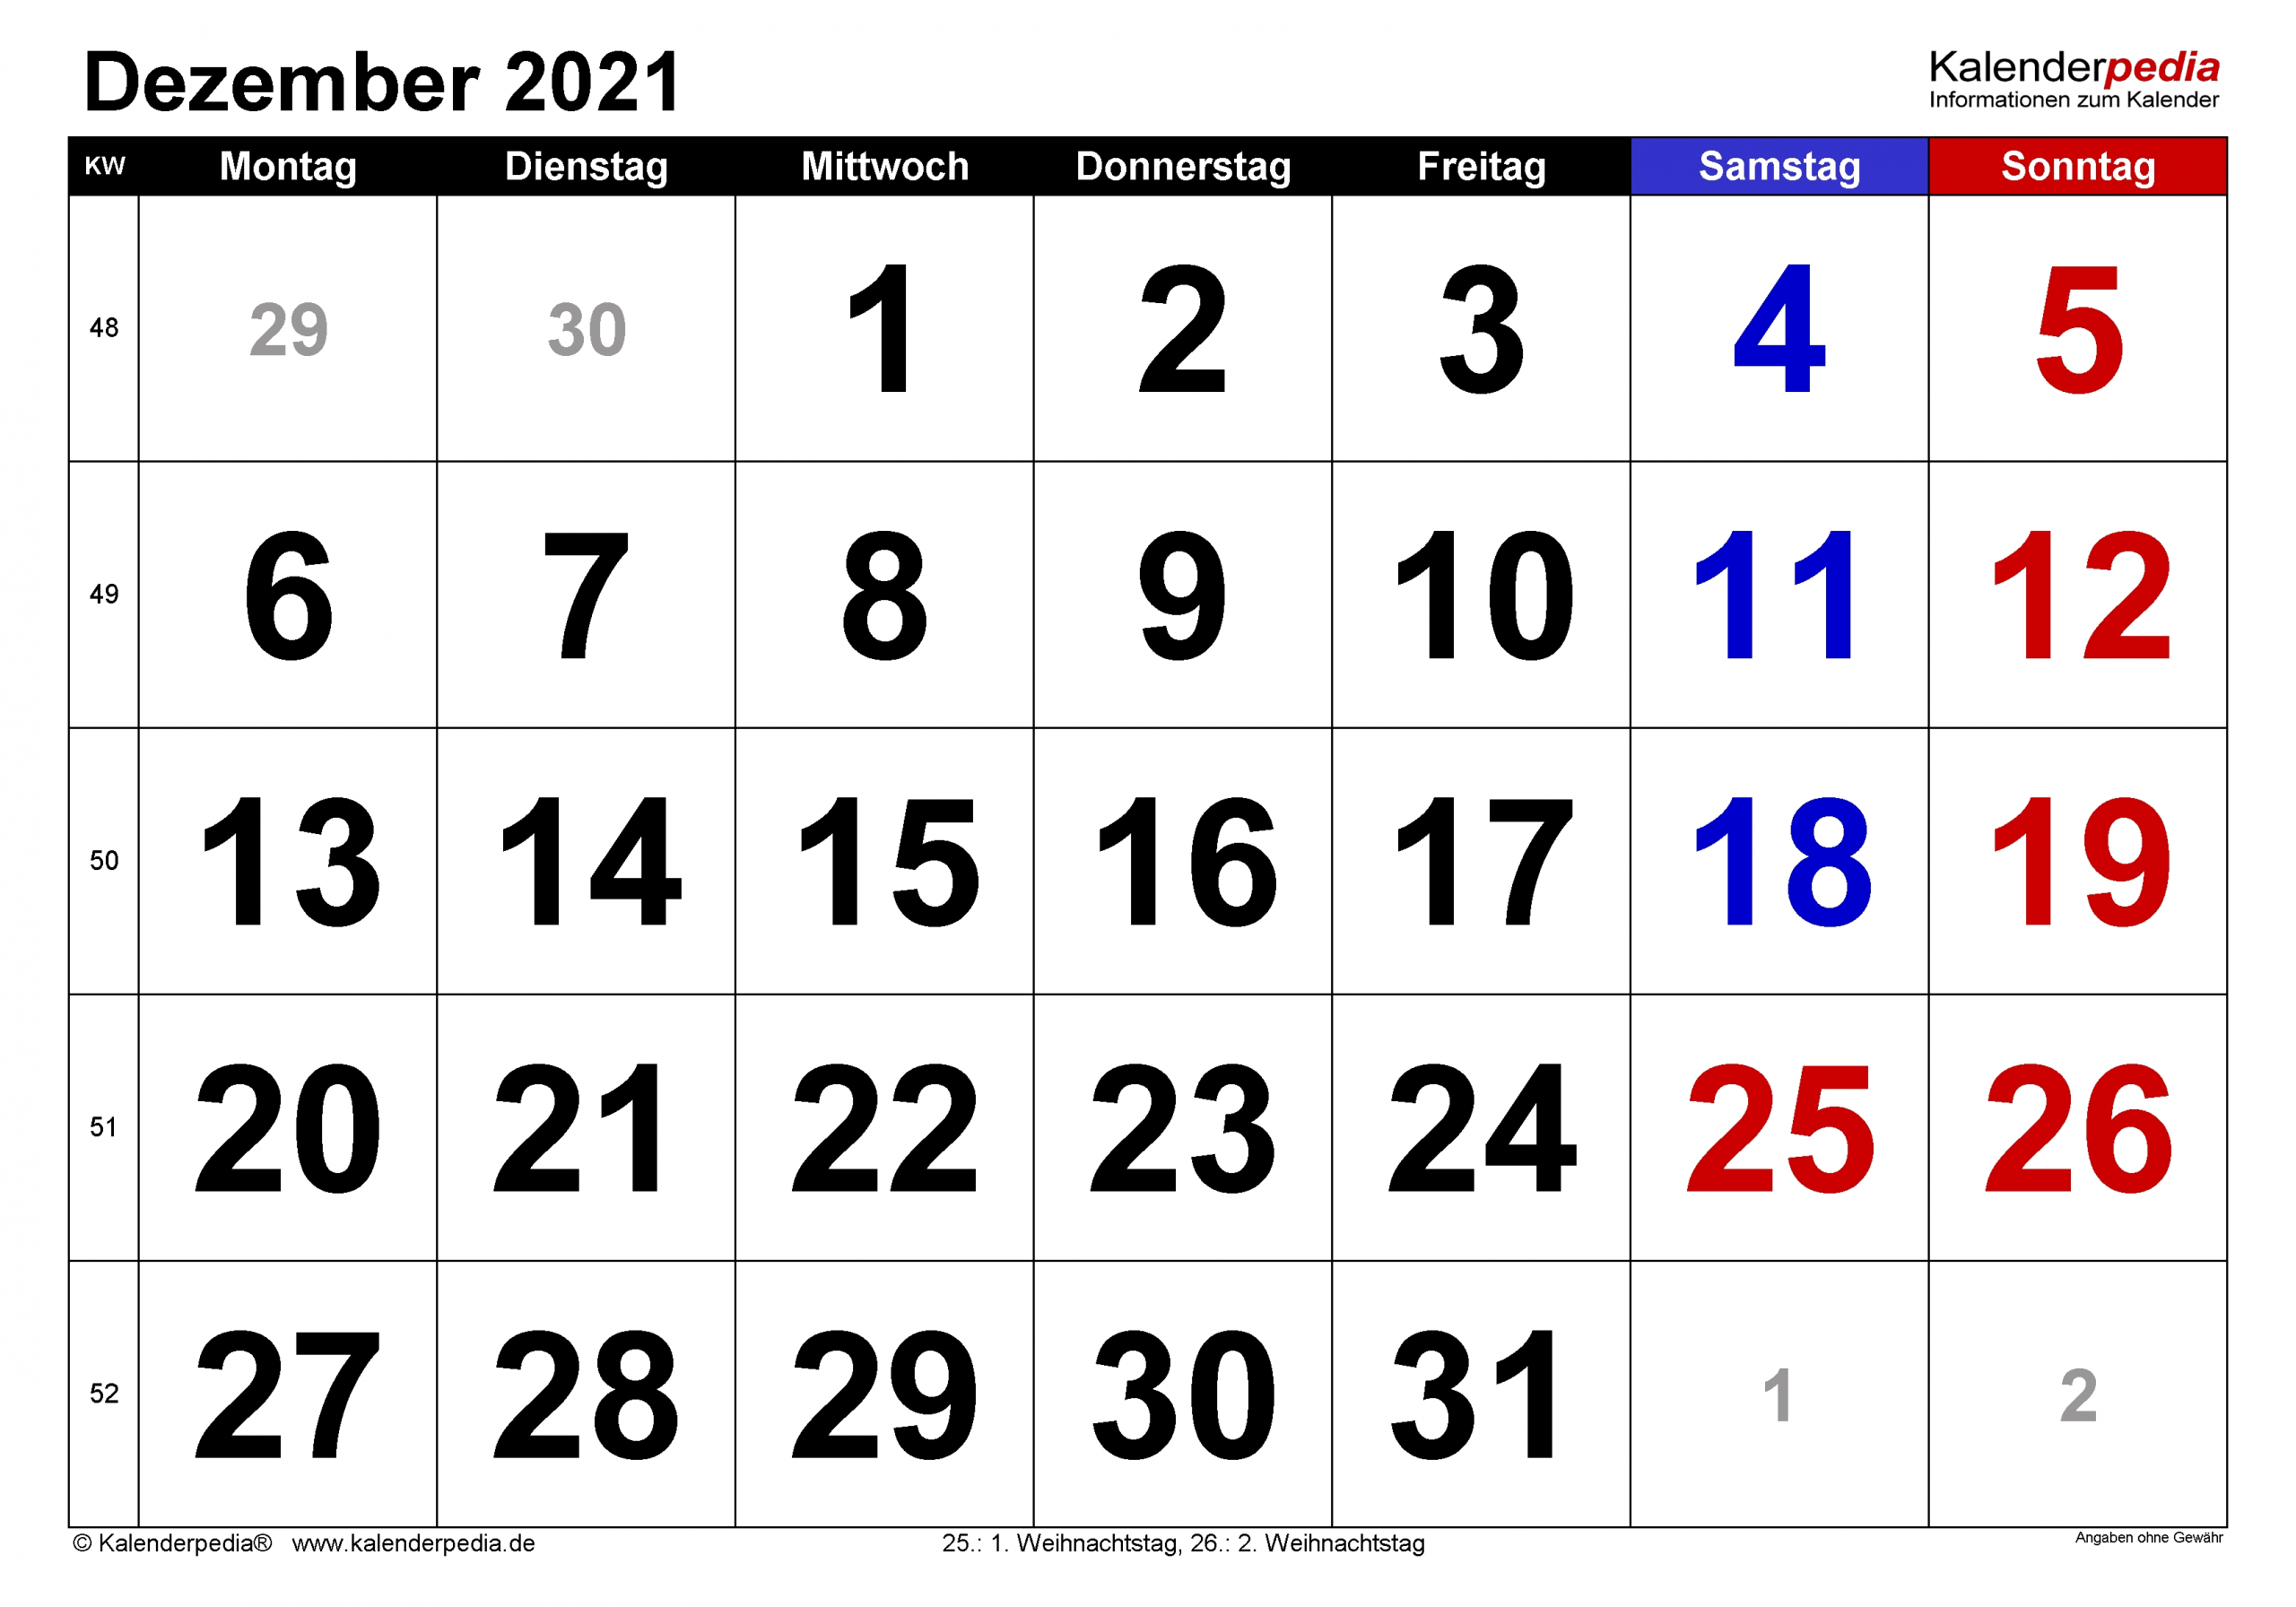 Get Kw Kalender 2021 Dezember